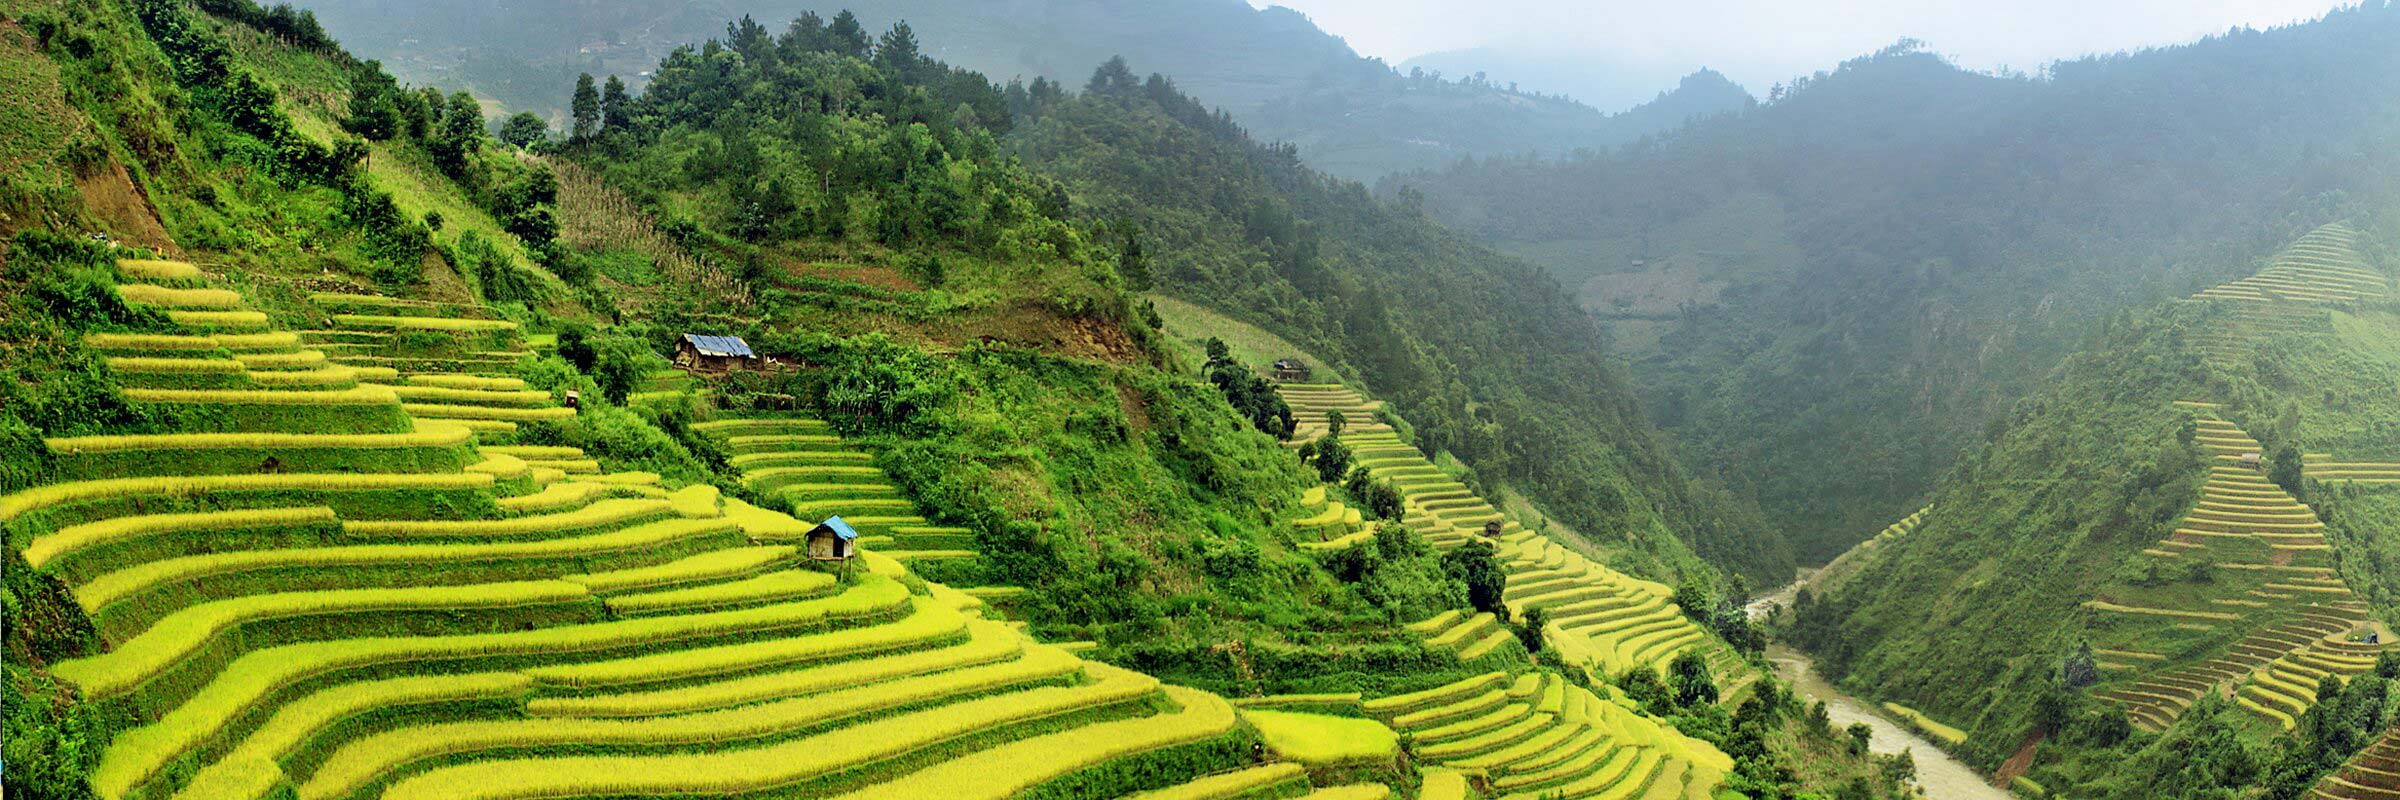 Die Landschaft um die Stadt Sapa herum ist von üppigen, grünen Reisterrassen geprägt.